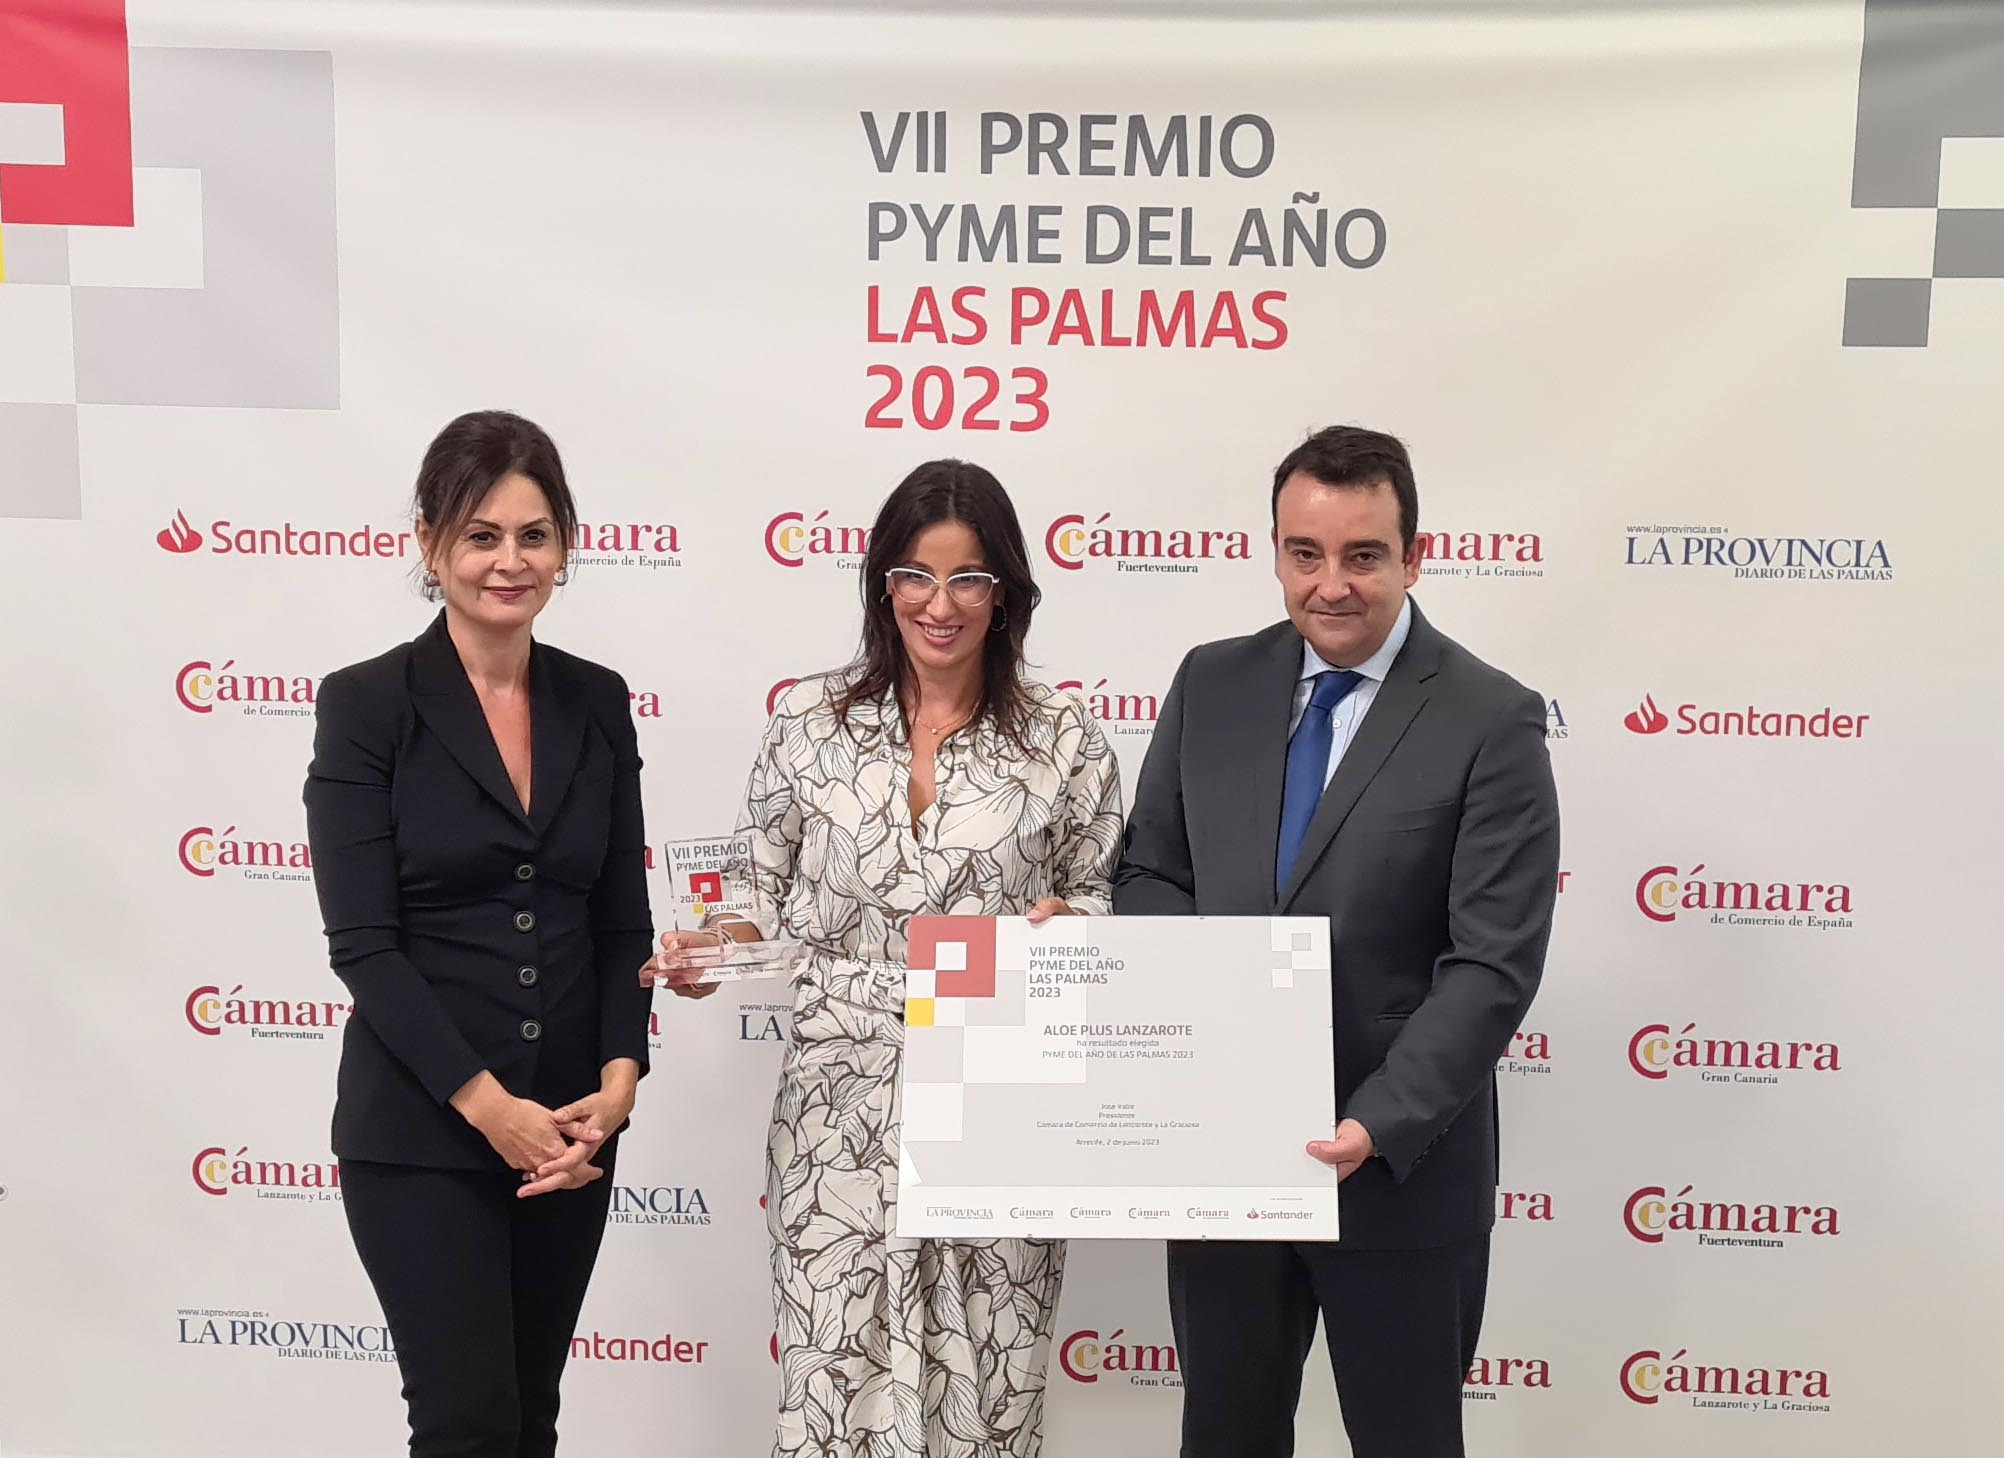 60 empresas optan al Premio Pyme del Año de La provincia de Las Palmas del Banco Santander y Cámara de España